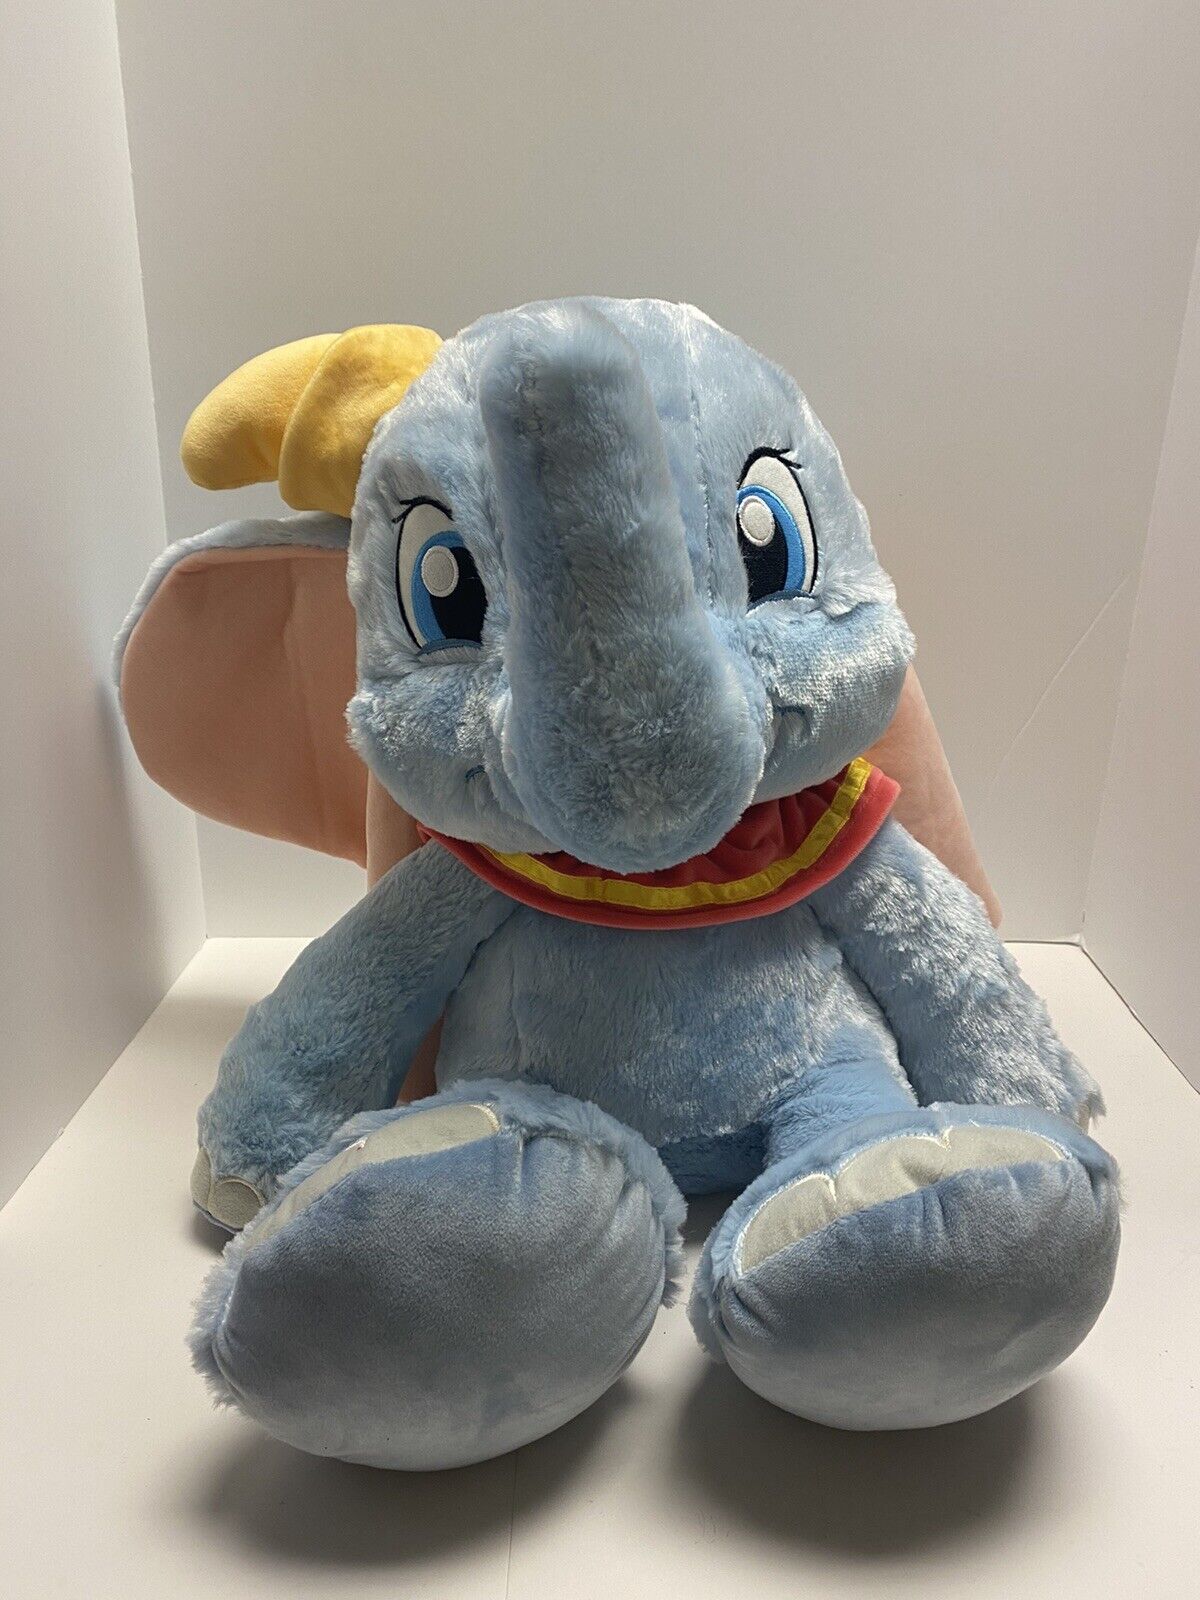 VERY Soft Dumbo Plush Disney Parks Extra Large 18'' NWT Stuffed Elephant Toy NEW